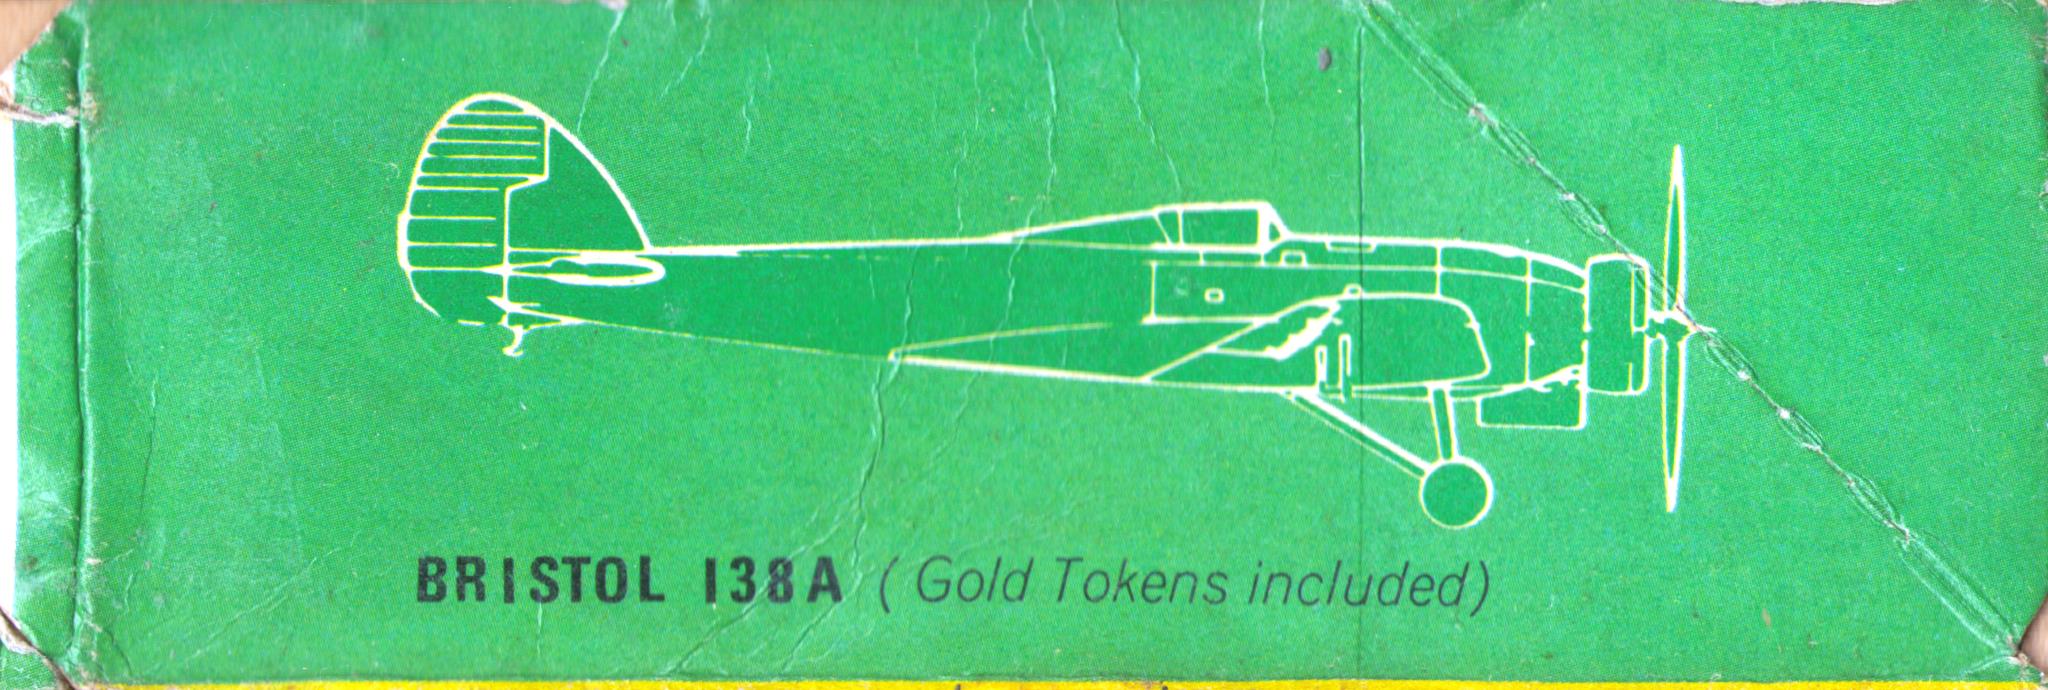 Изображения других моделей Зелёной серии на внутренних стенках коробки FROG F323 English Electric Canberra PR.7, Rovex, 1965